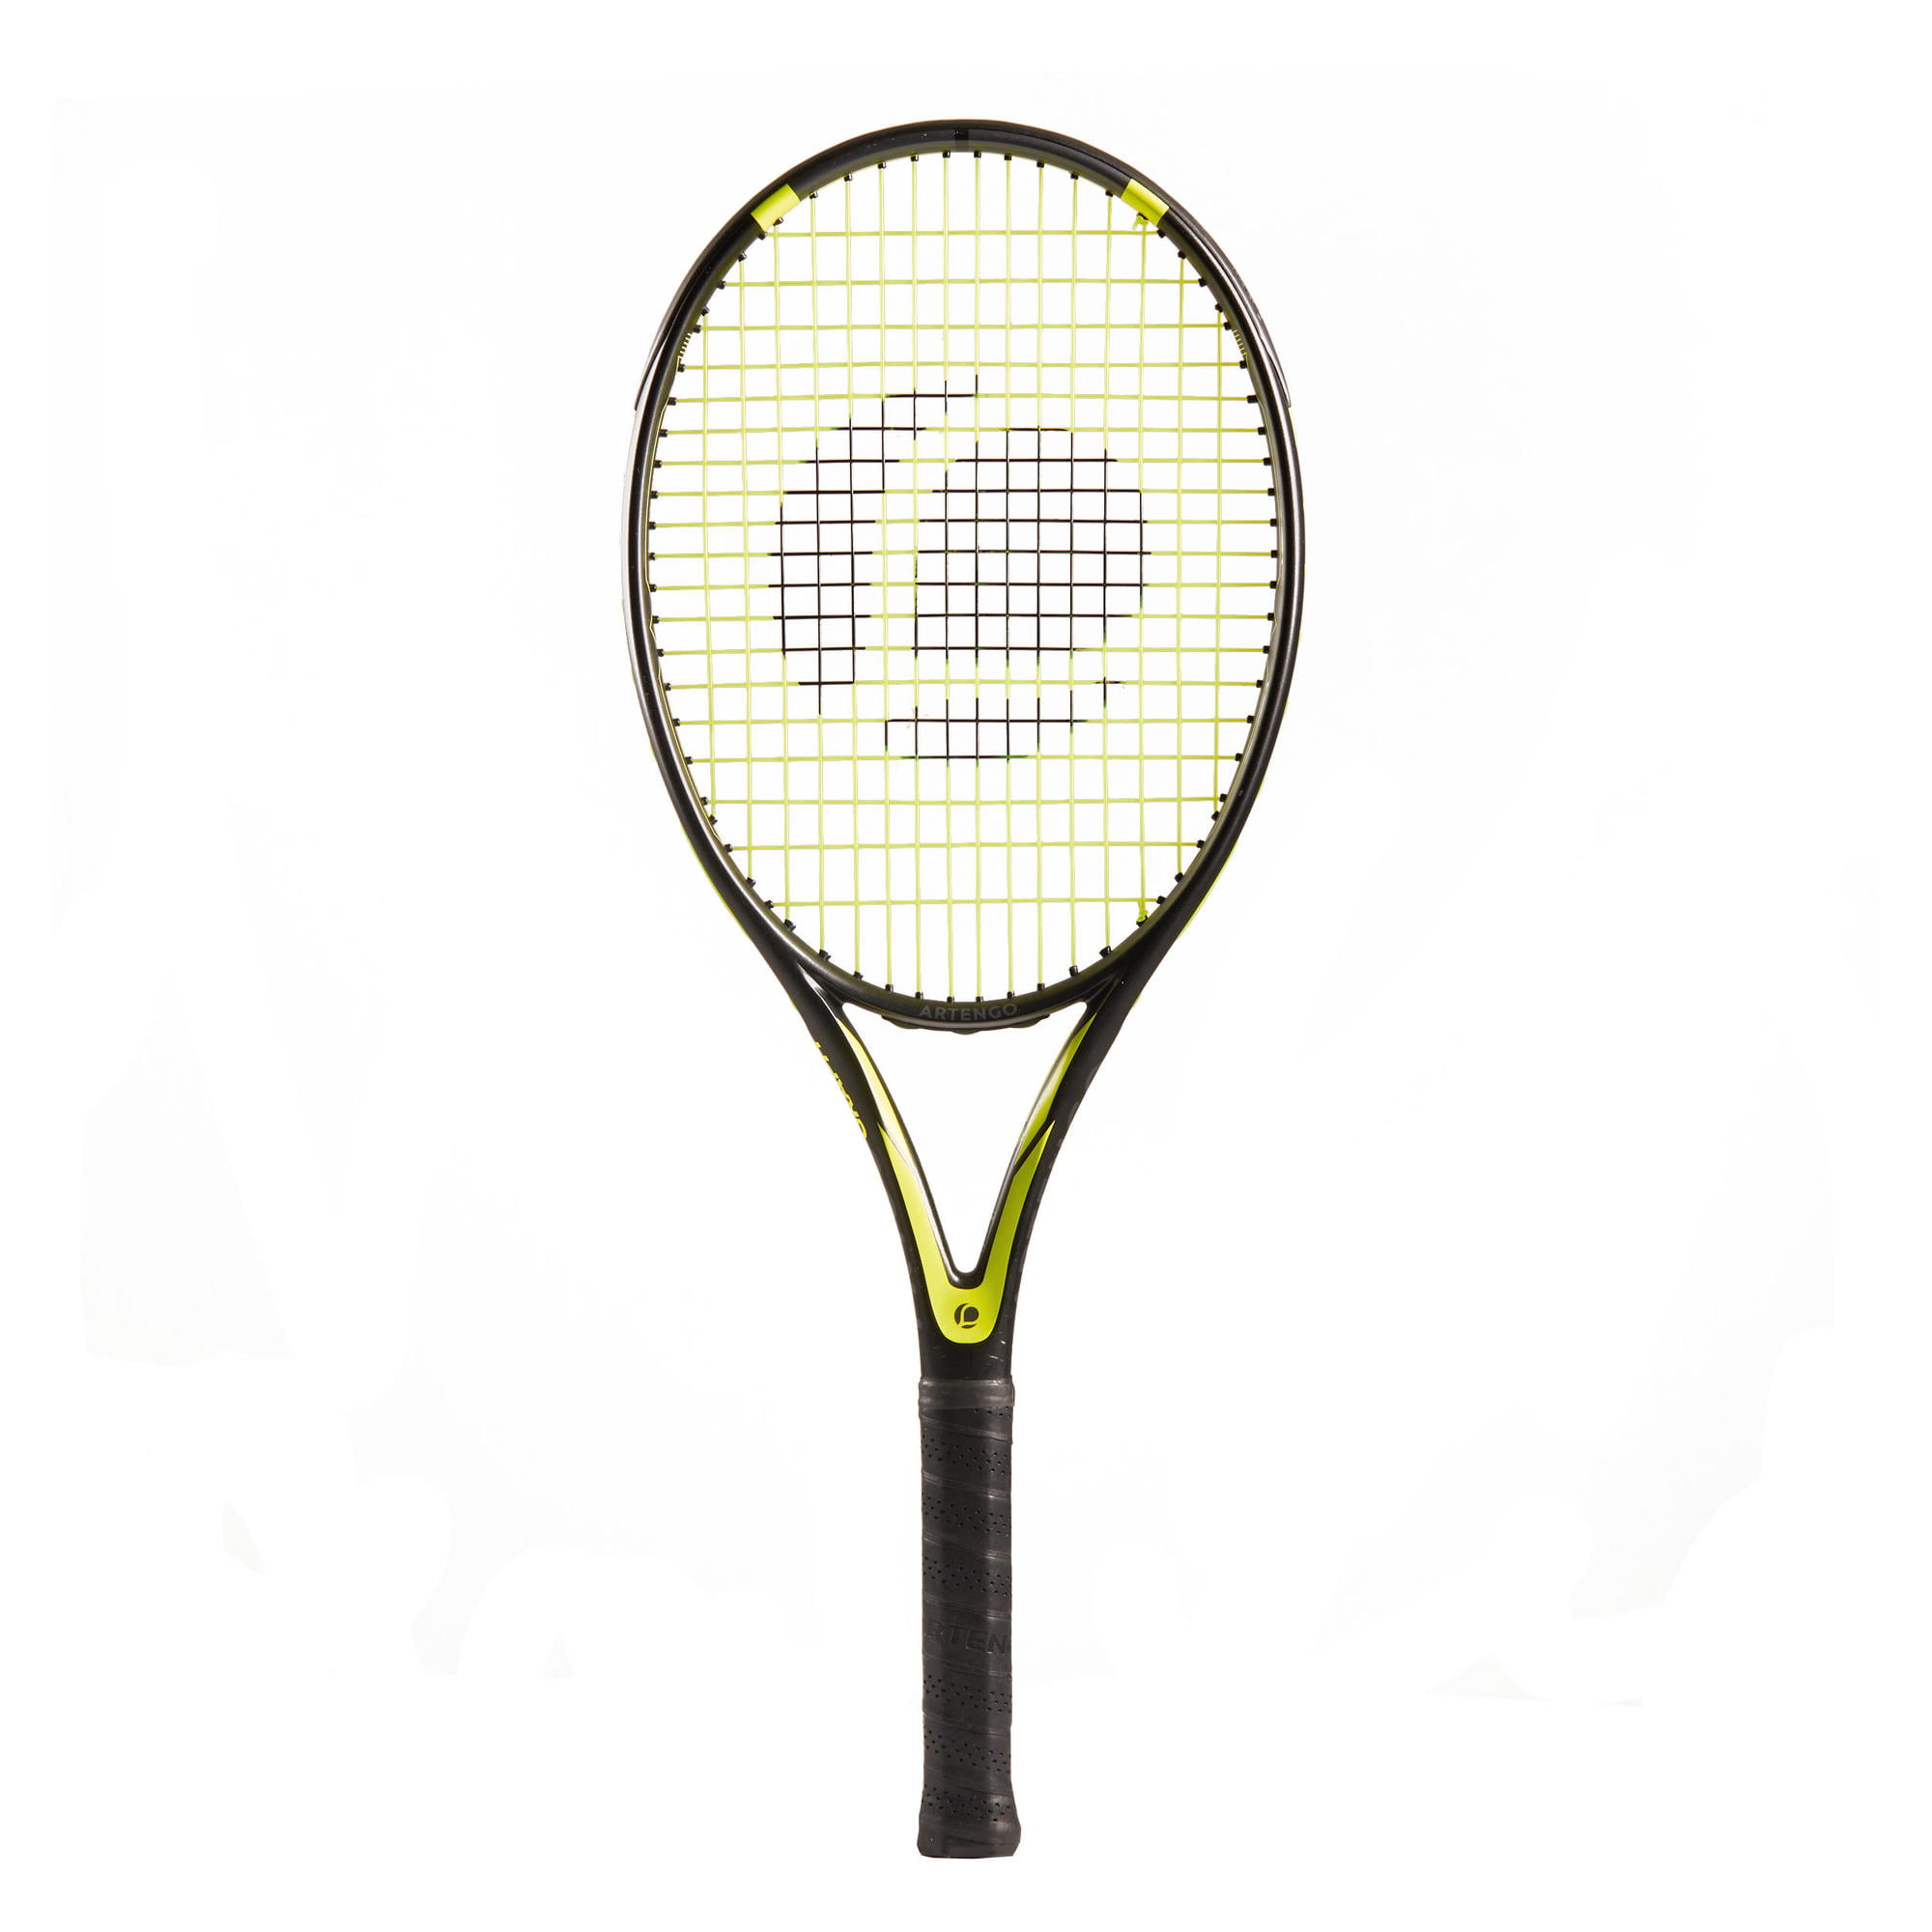 artengo tennis racket review